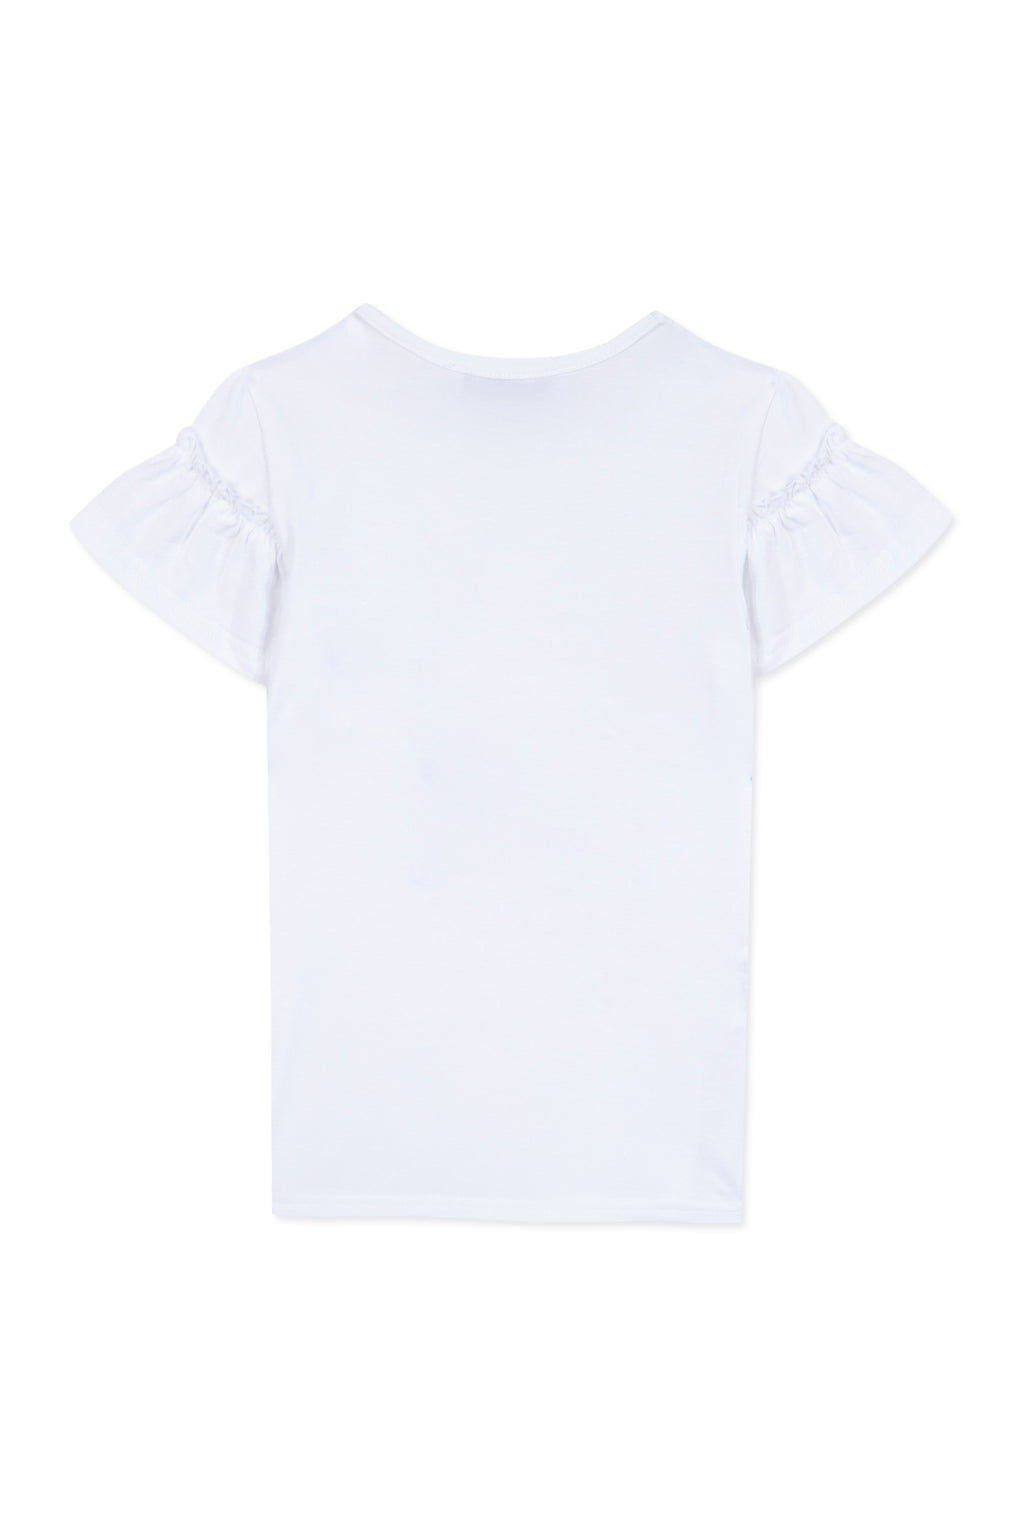 T-shirt - White Illustration girl